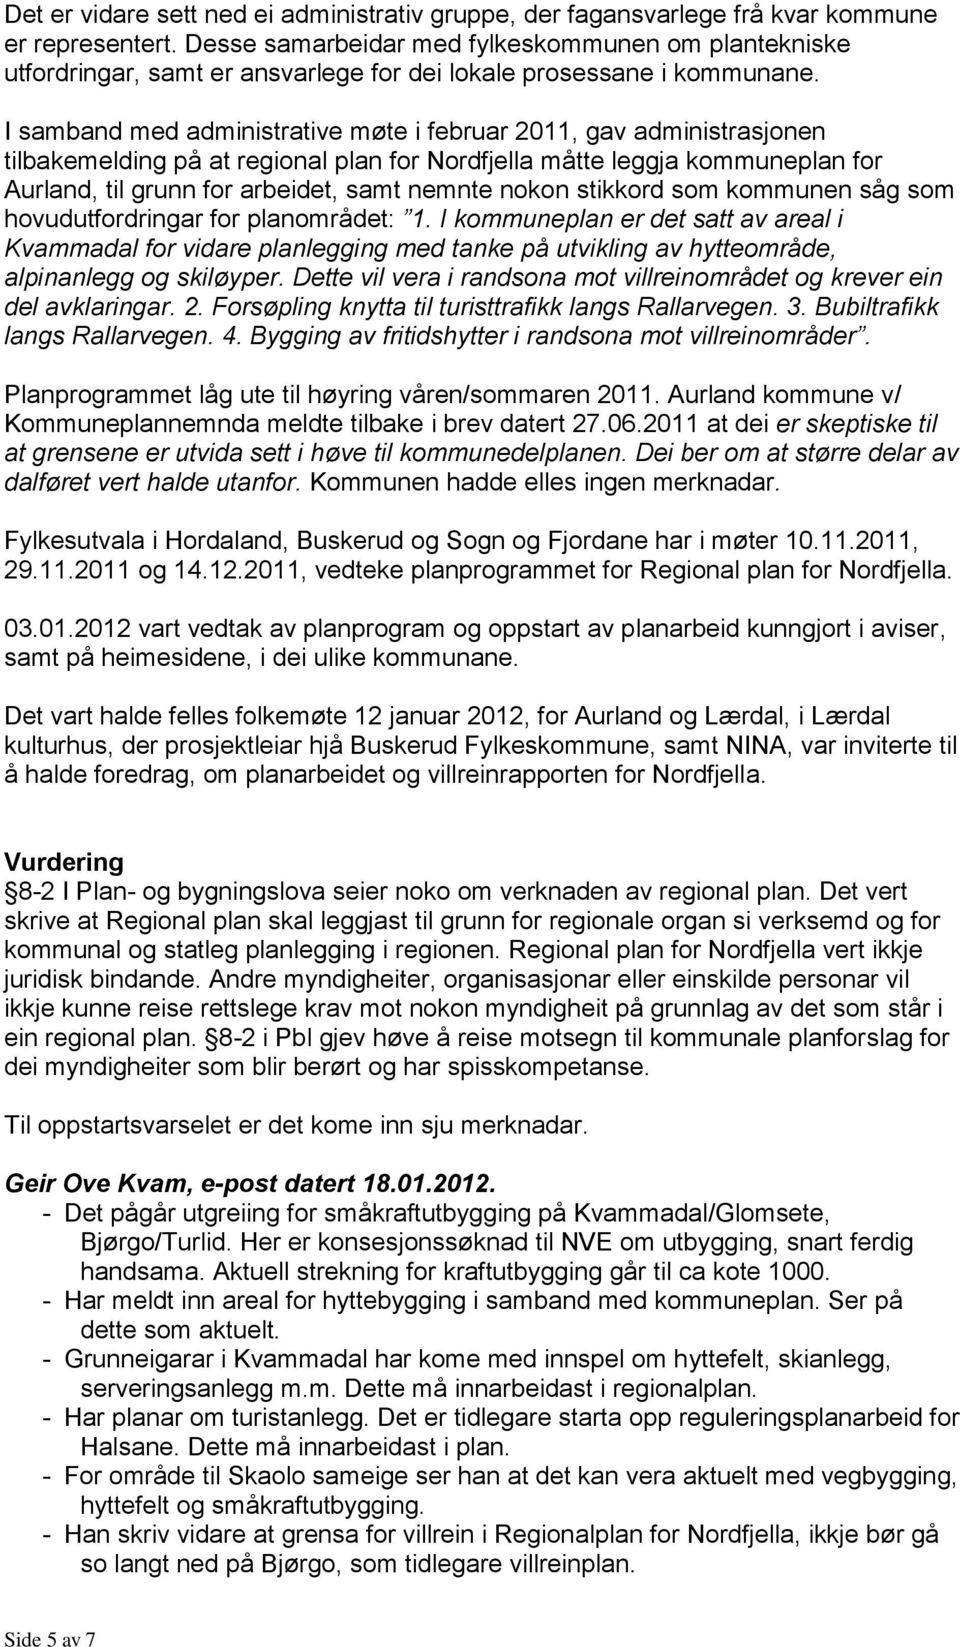 I samband med administrative møte i februar 2011, gav administrasjonen tilbakemelding på at regional plan for Nordfjella måtte leggja kommuneplan for Aurland, til grunn for arbeidet, samt nemnte